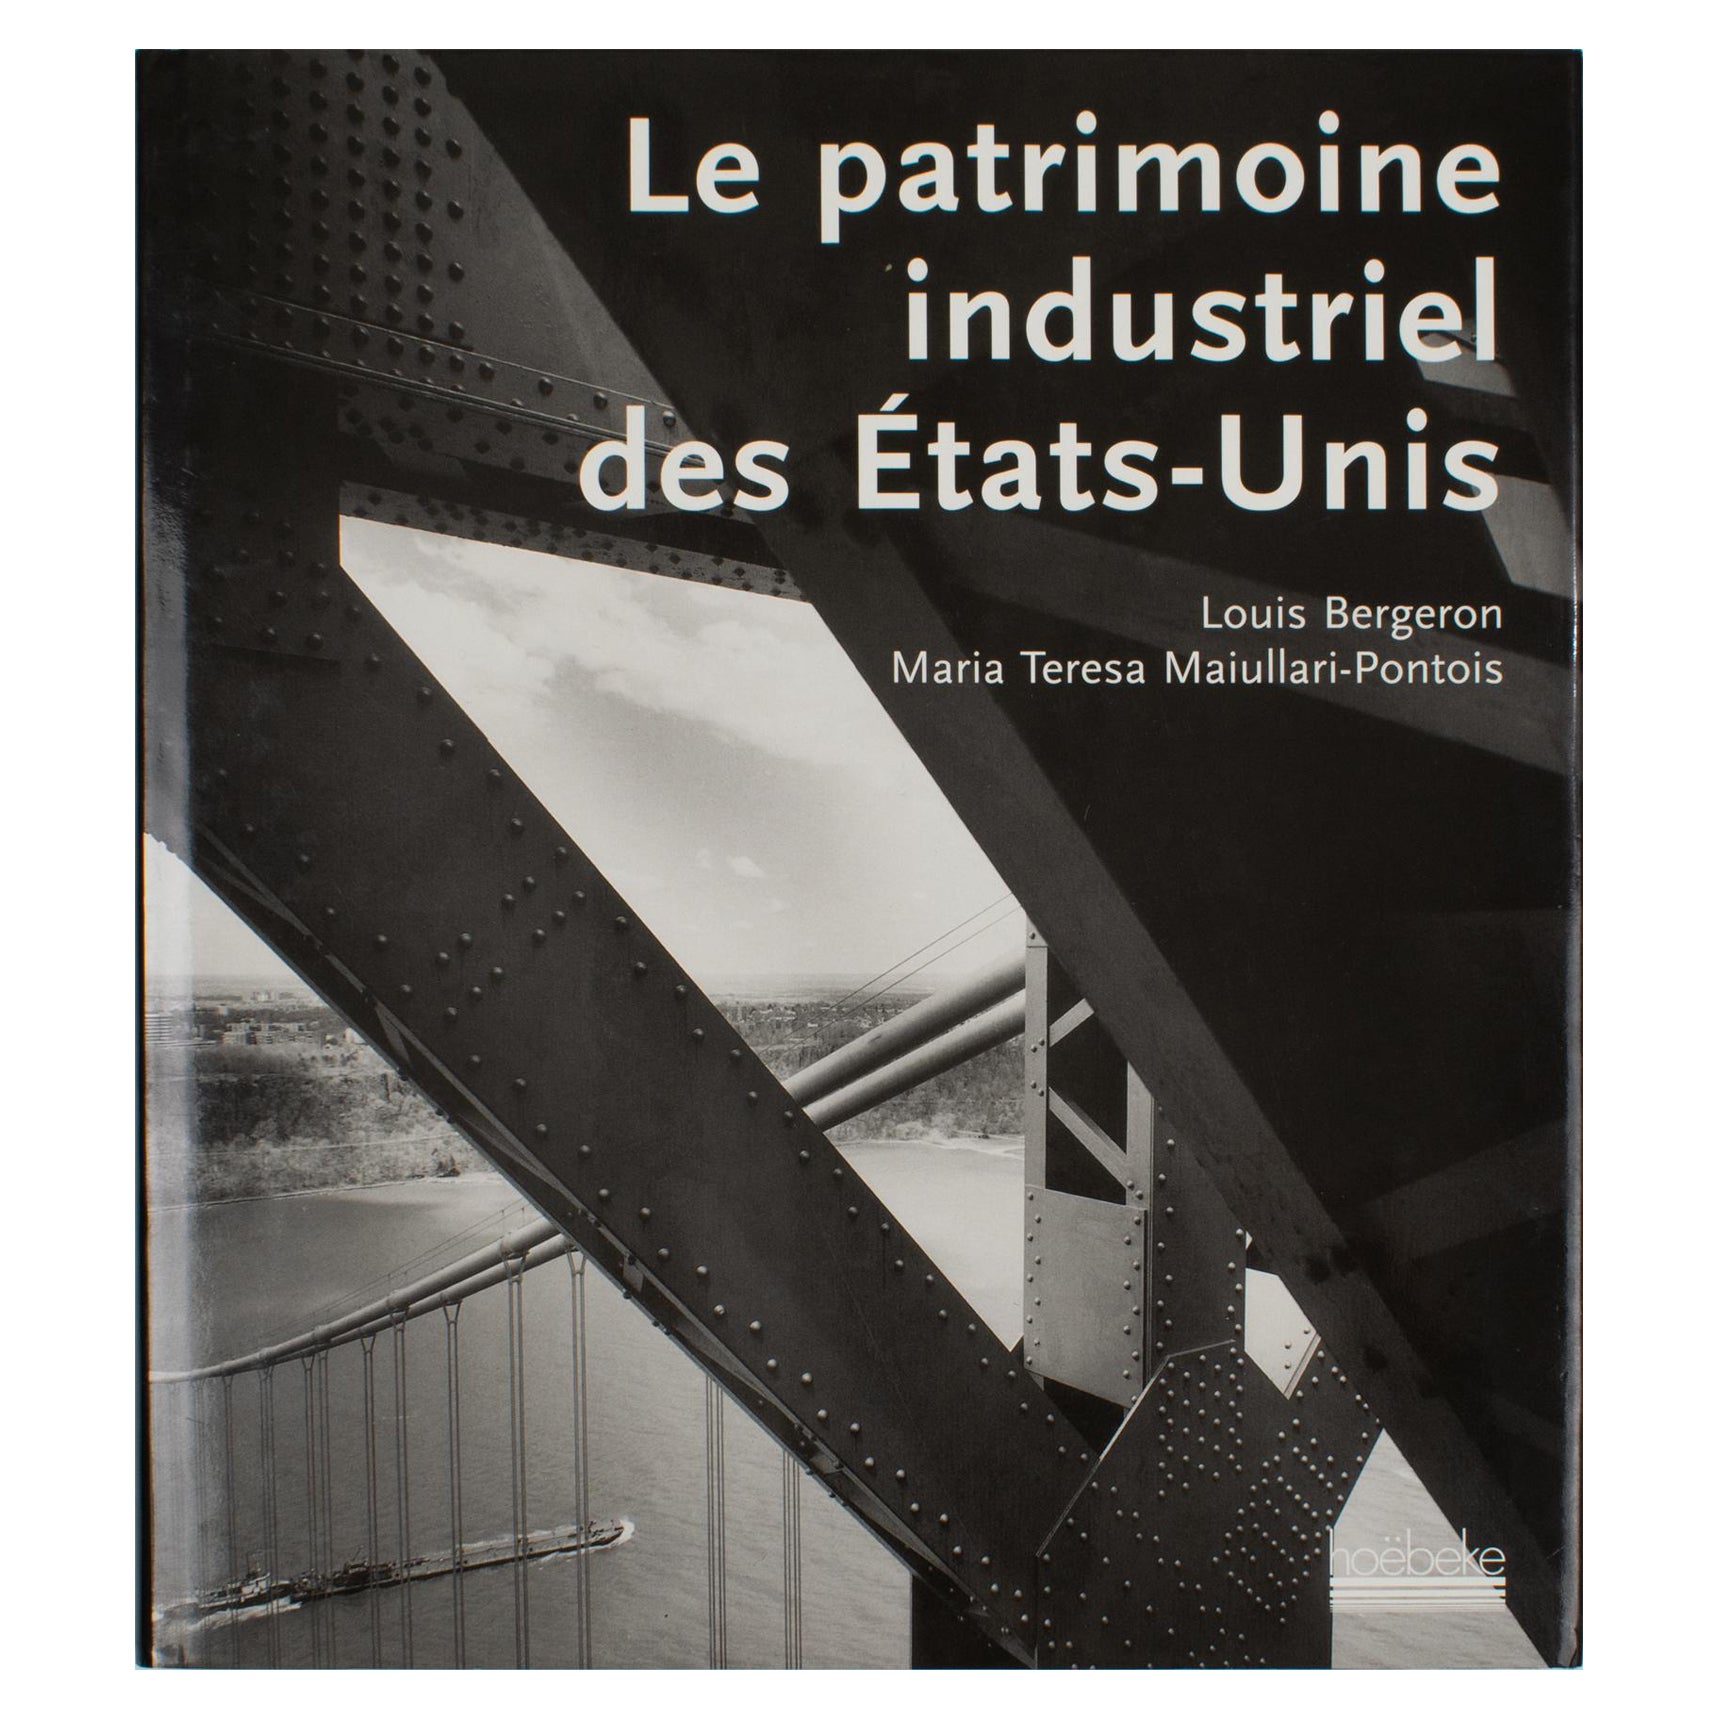 Le patrimoine industriel des États-Unis, livre français de Louis Bergeron 2000 en vente